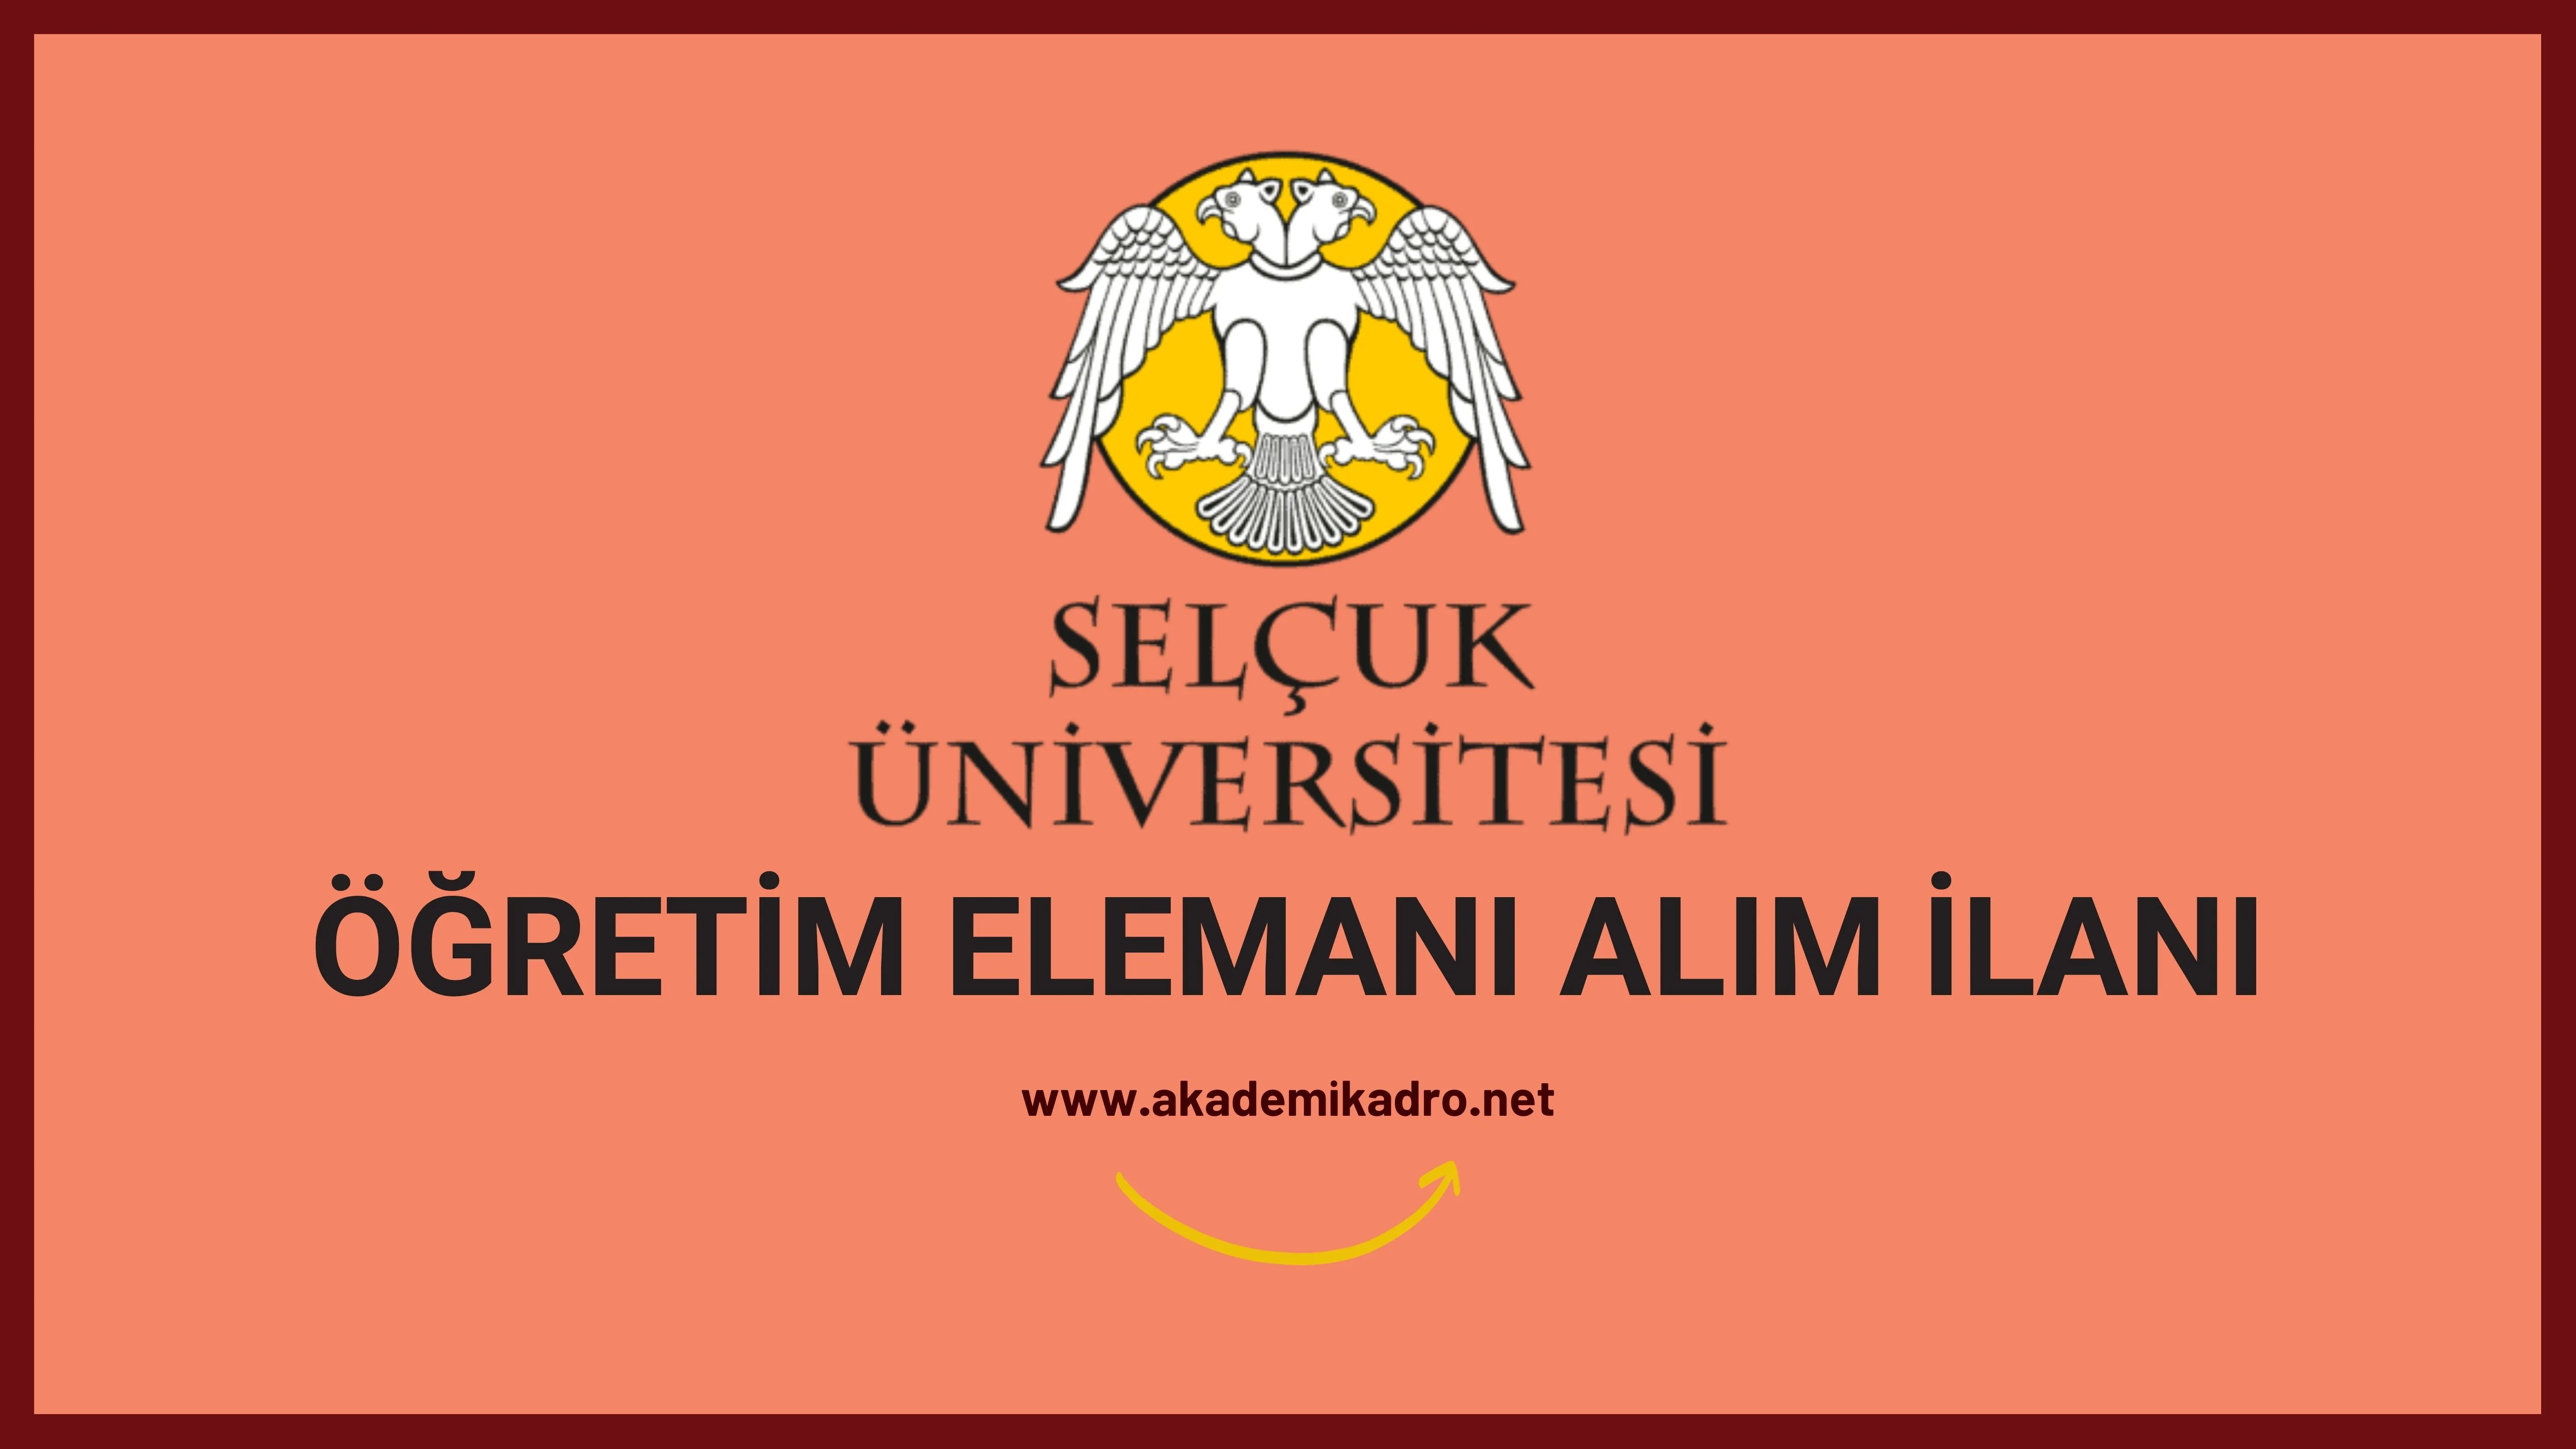 Selçuk Üniversitesi 3 Araştırma görevlisi ve 5 Öğretim görevlisi alacak.